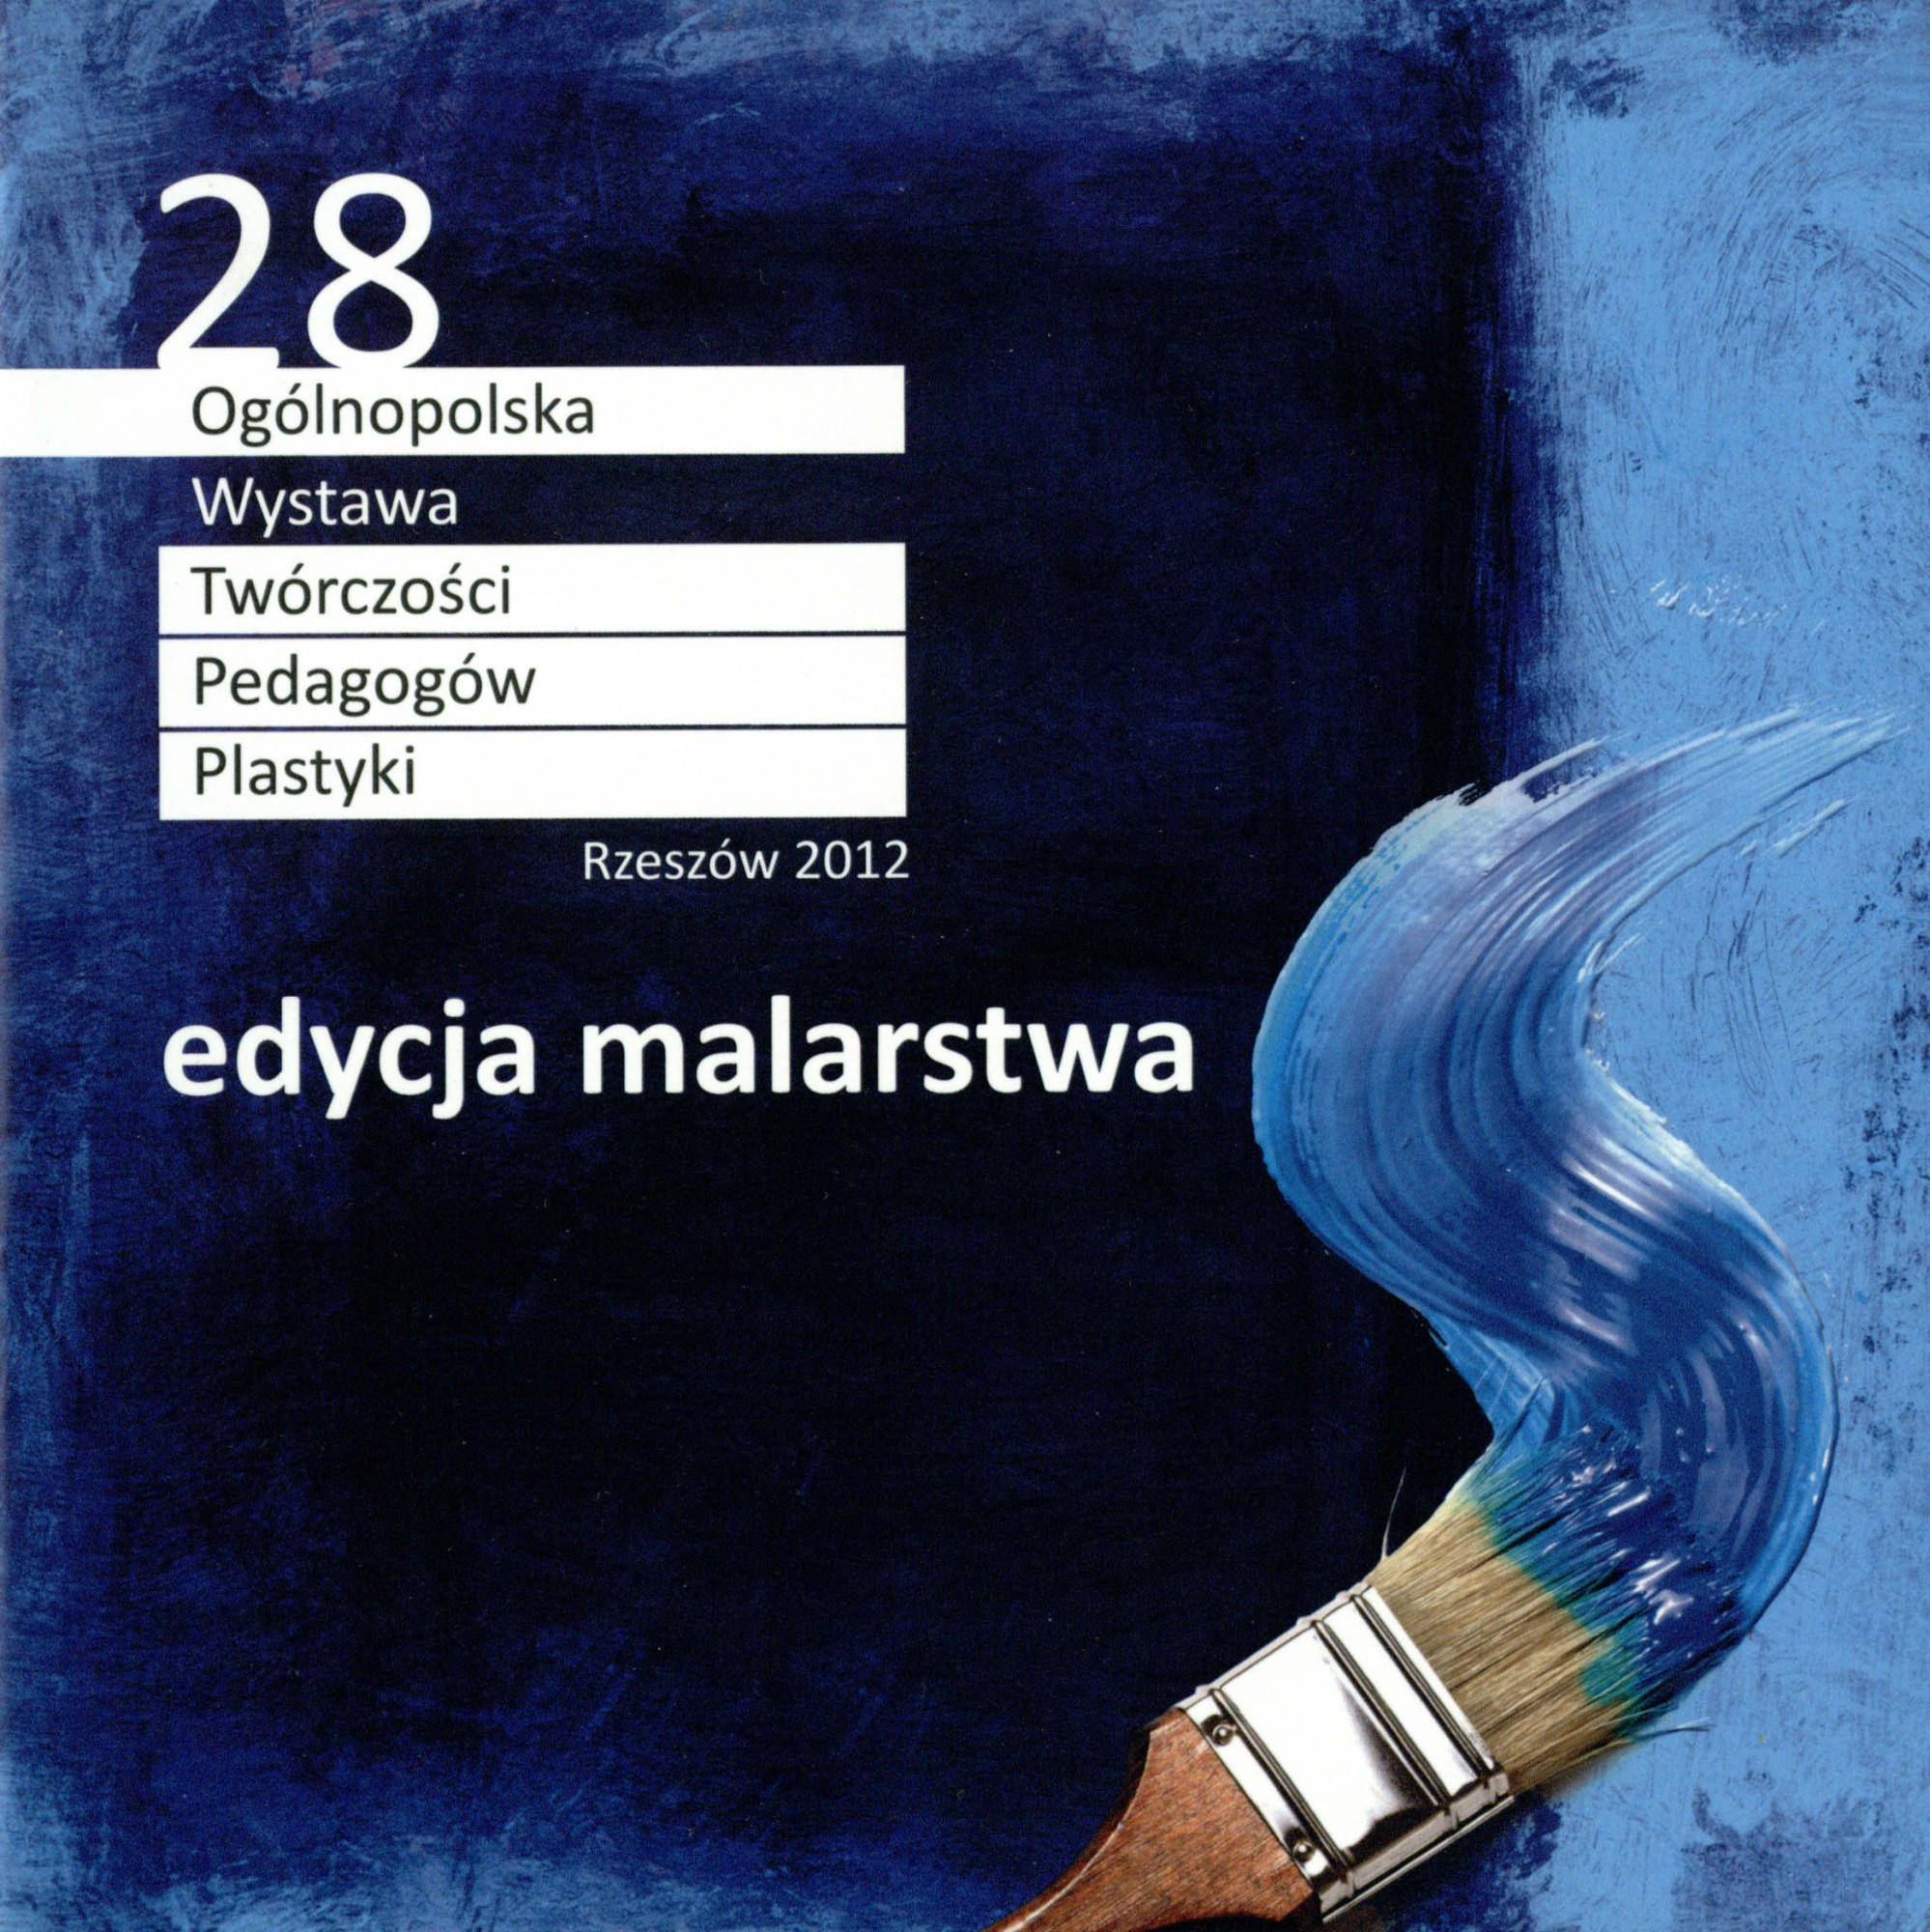 zdjęcie okładki katalogu - 28 Ogólnopolska Wystawa Twórczości Pedagogów Plastyki